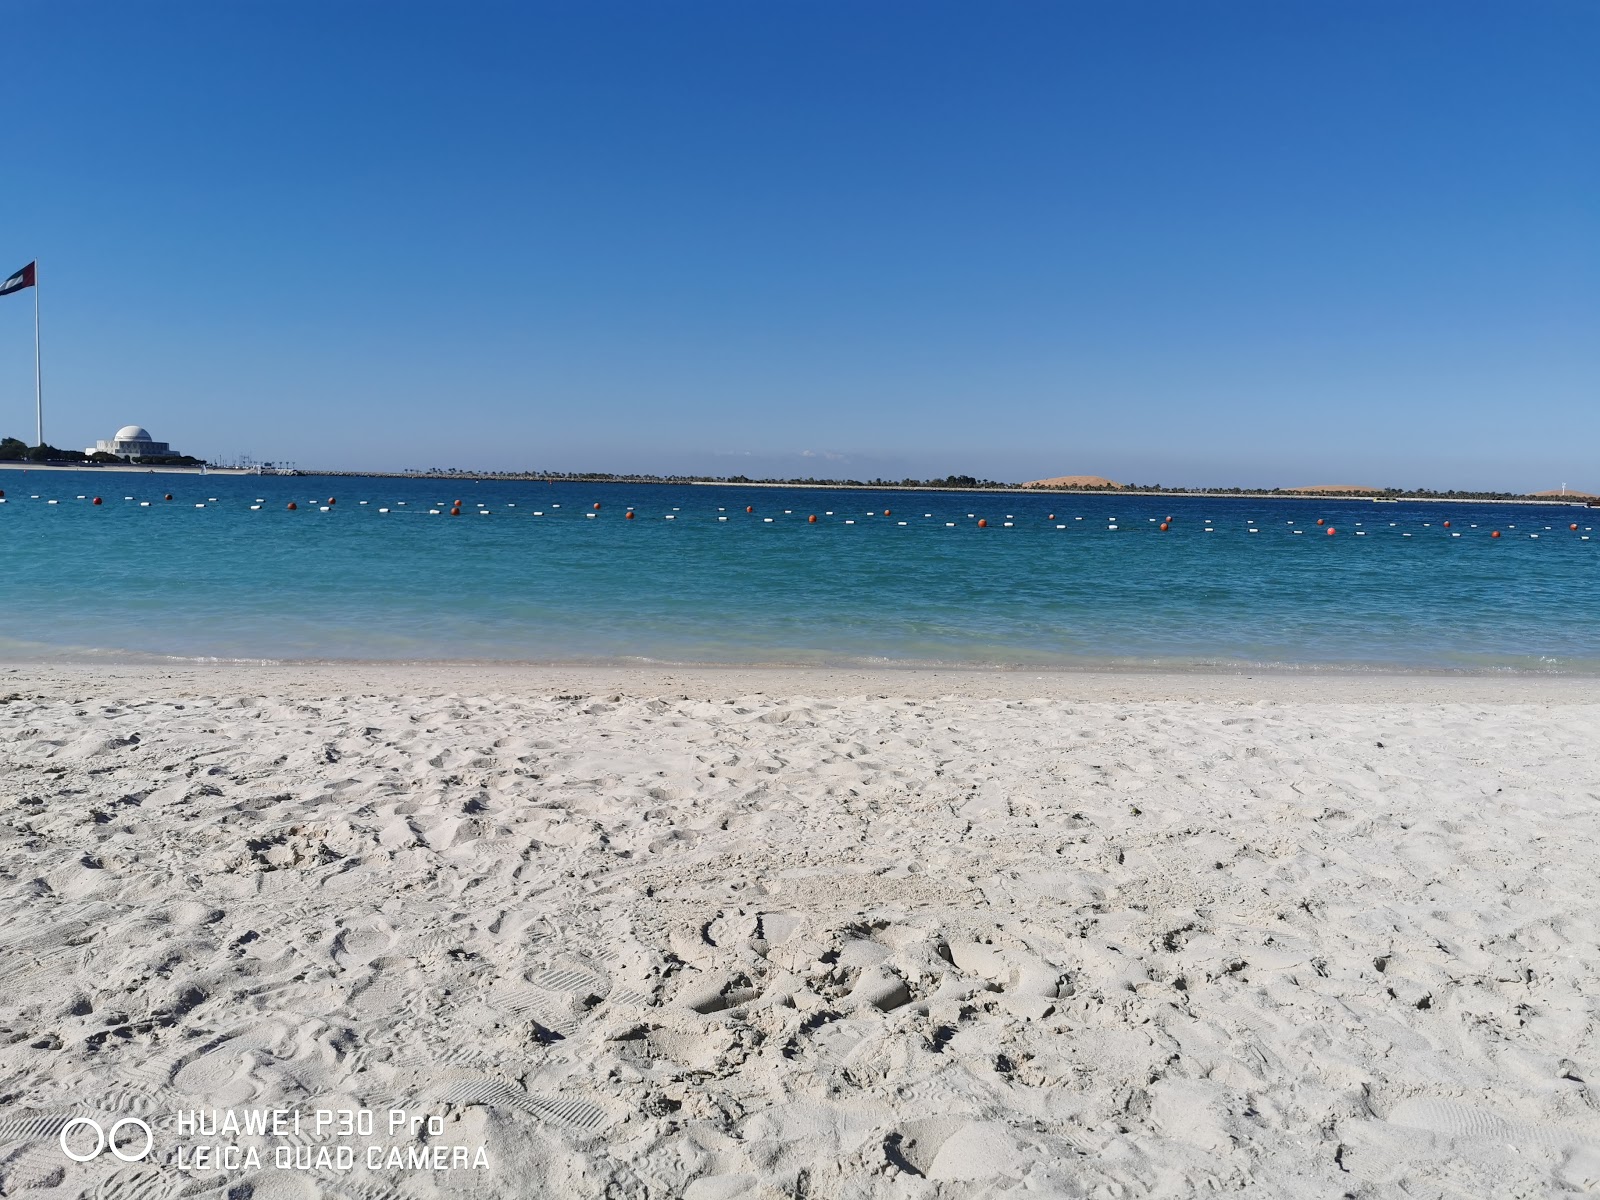 Fotografie cu Corniche beach cu o suprafață de apa pură turcoaz